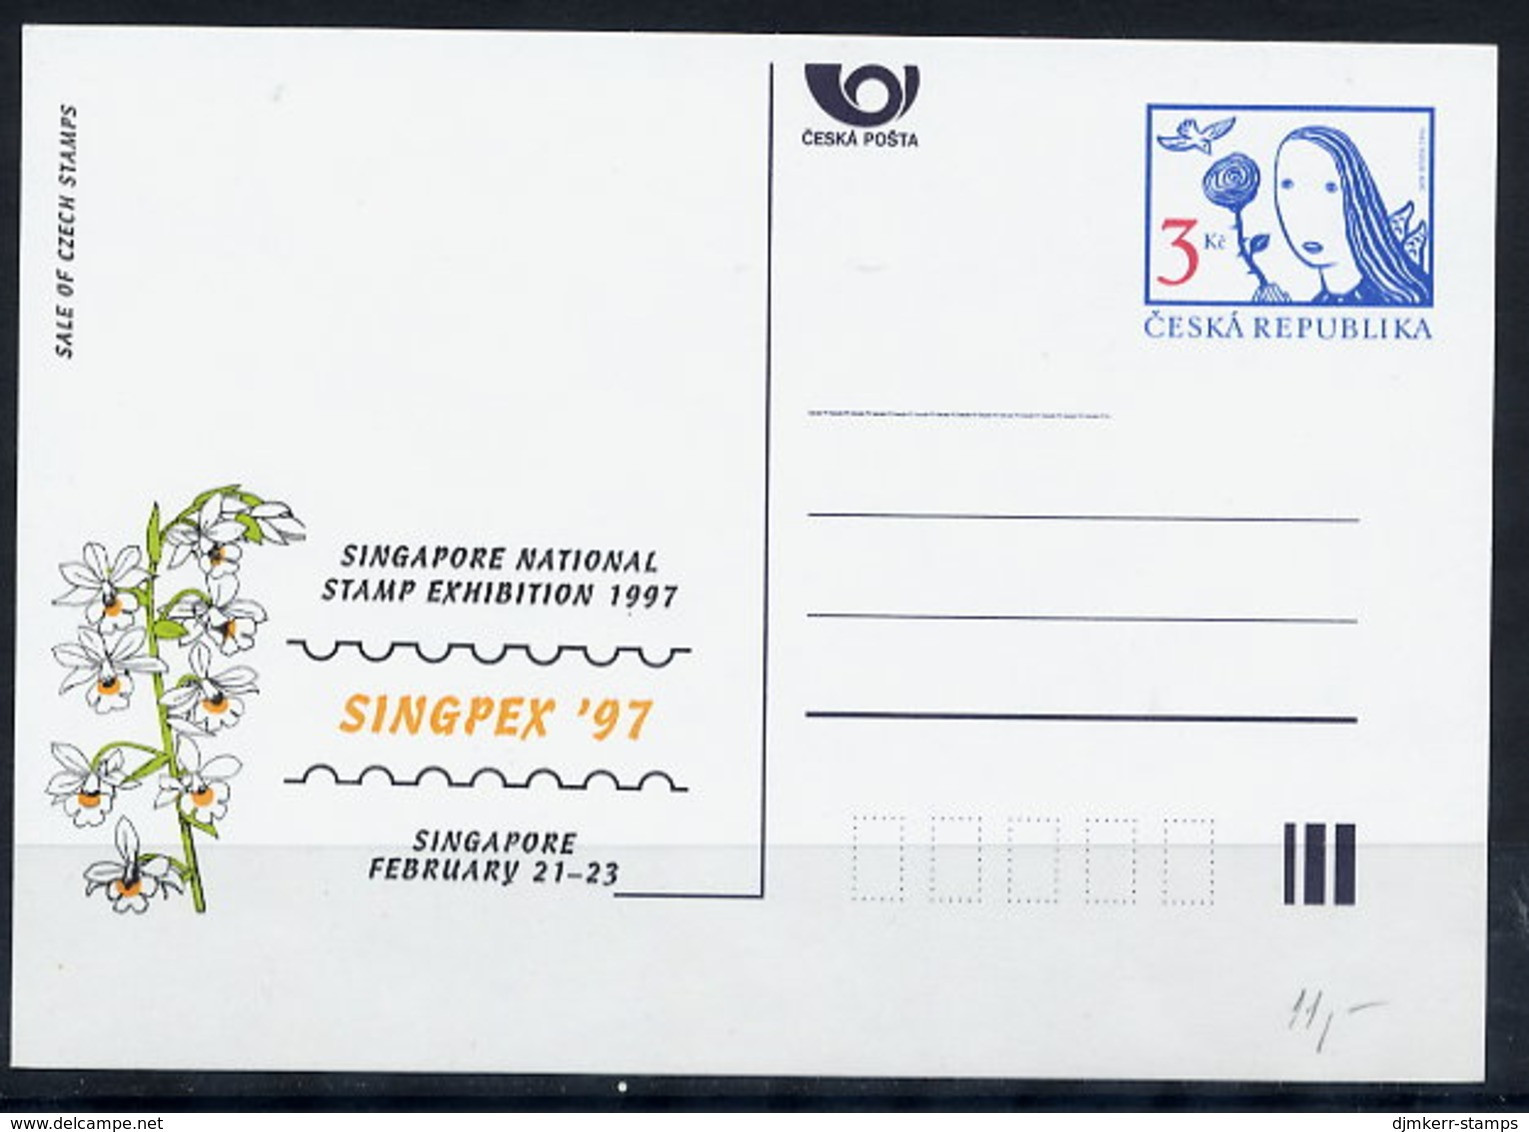 CZECH REPUBLIC 1997 3 Kc. Postcard SINGPEX 1997, Unused.  Michel P18-A3 - Cartes Postales